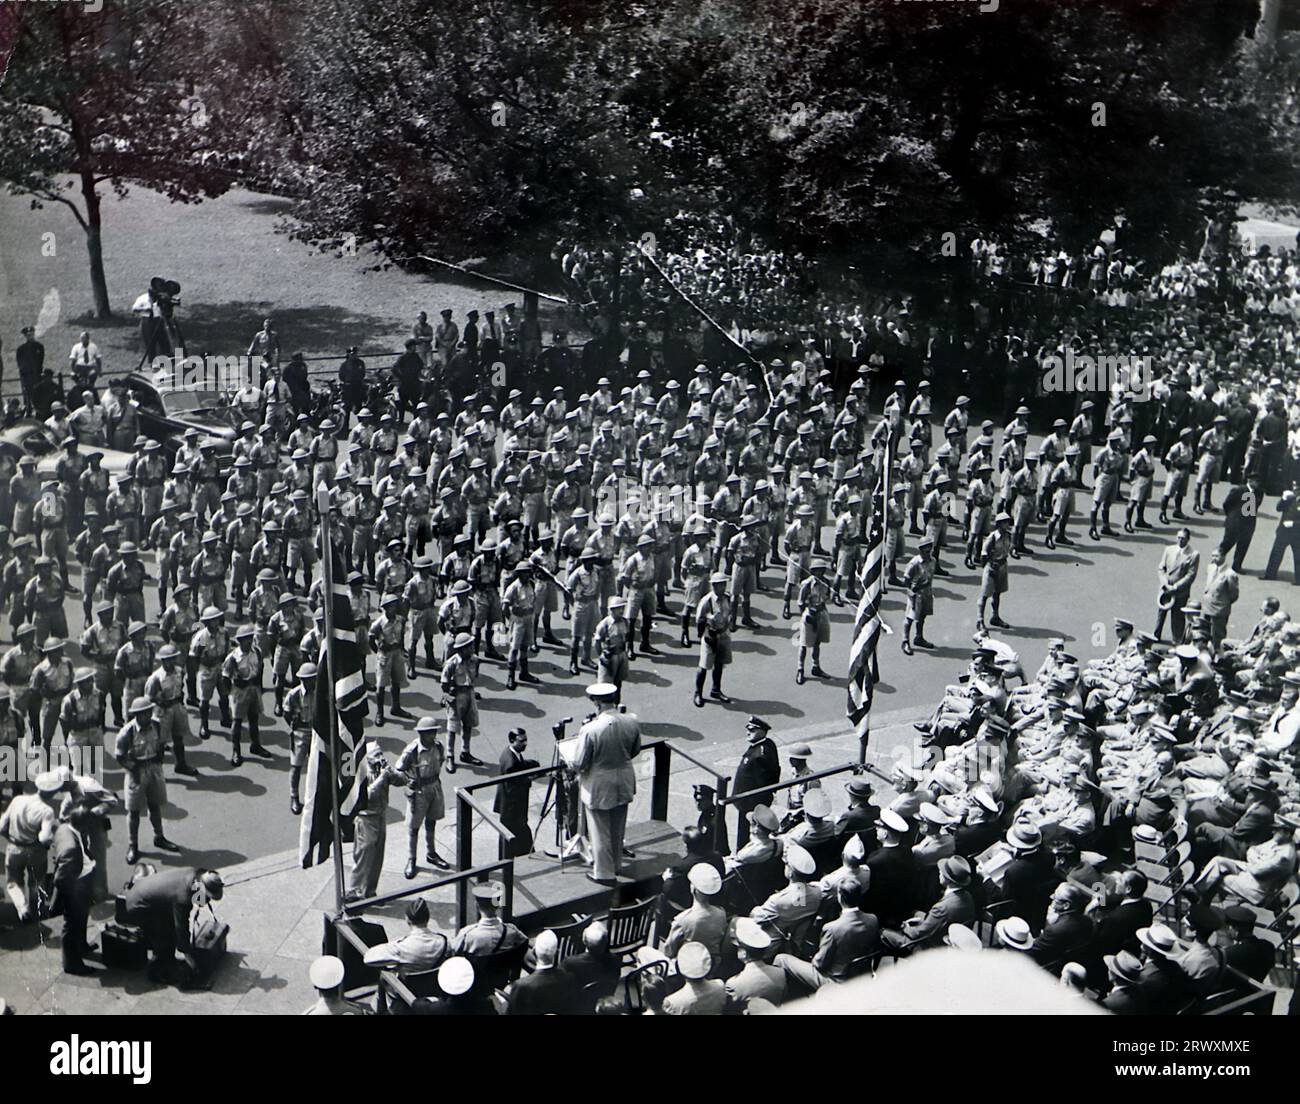 Auf der Parade vor dem Rathaus in New York. Seltenes Foto: Aus einer Sammlung eines unbekannten britischen Soldaten über die No. 1 Composite Demonstration, AA Battery, Tour durch die USA, vom 11. Juli 1943. Dies ist eines von mehr als hundert Bildern in der Sammlung, die im Durchschnitt etwa 4 x 3 Zoll groß waren. Stockfoto